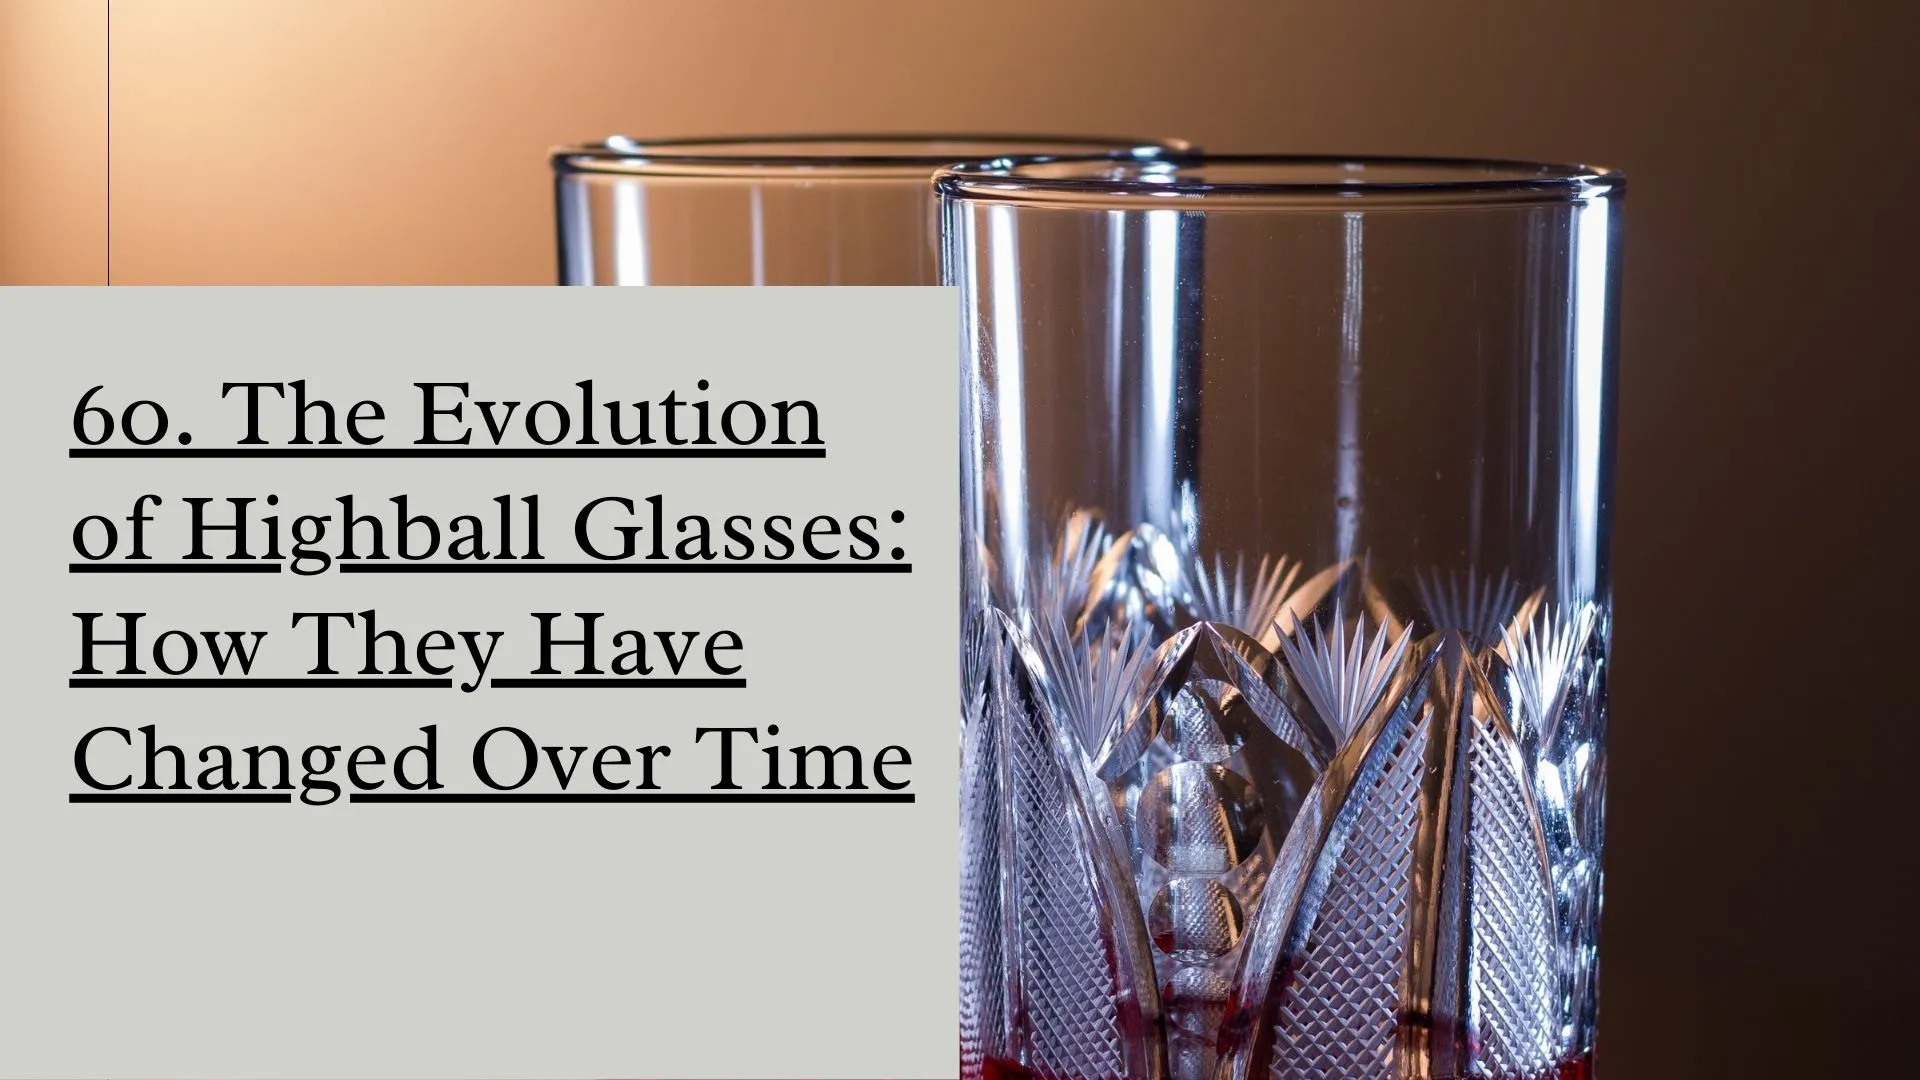 The Evolution of Highball Glasses